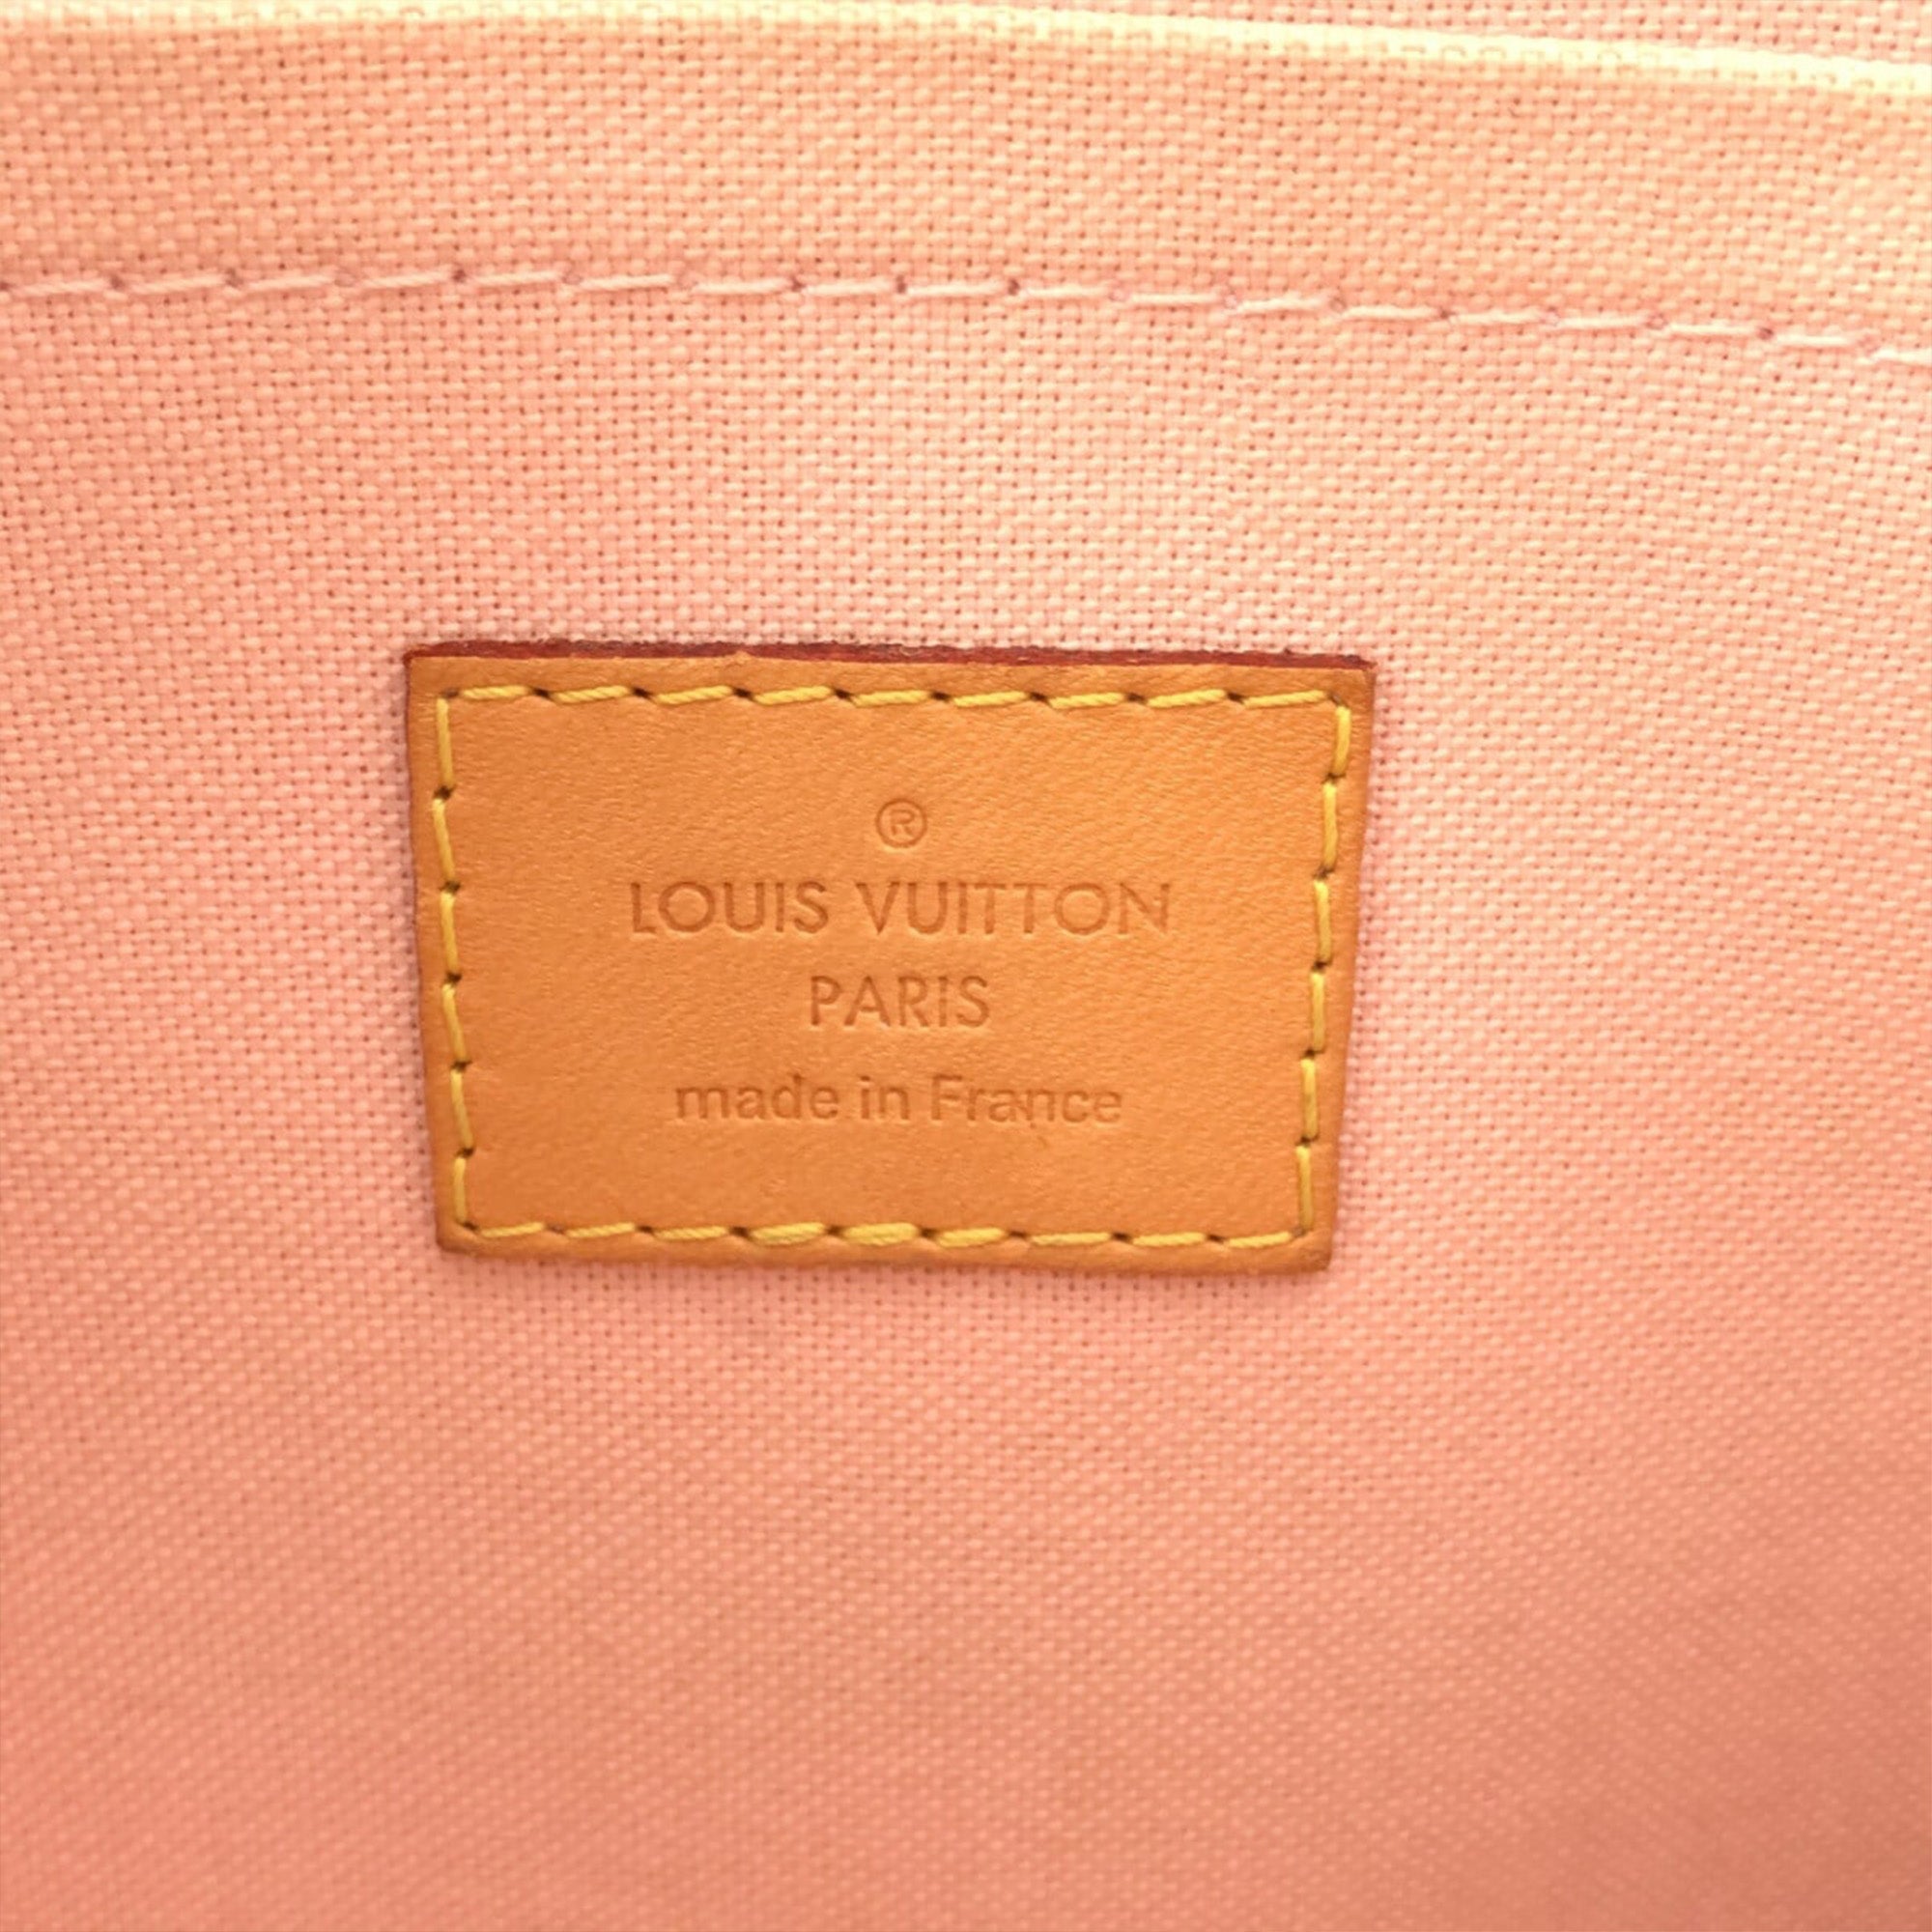 Angebote für Second Hand Taschen Louis Vuitton Flanerie